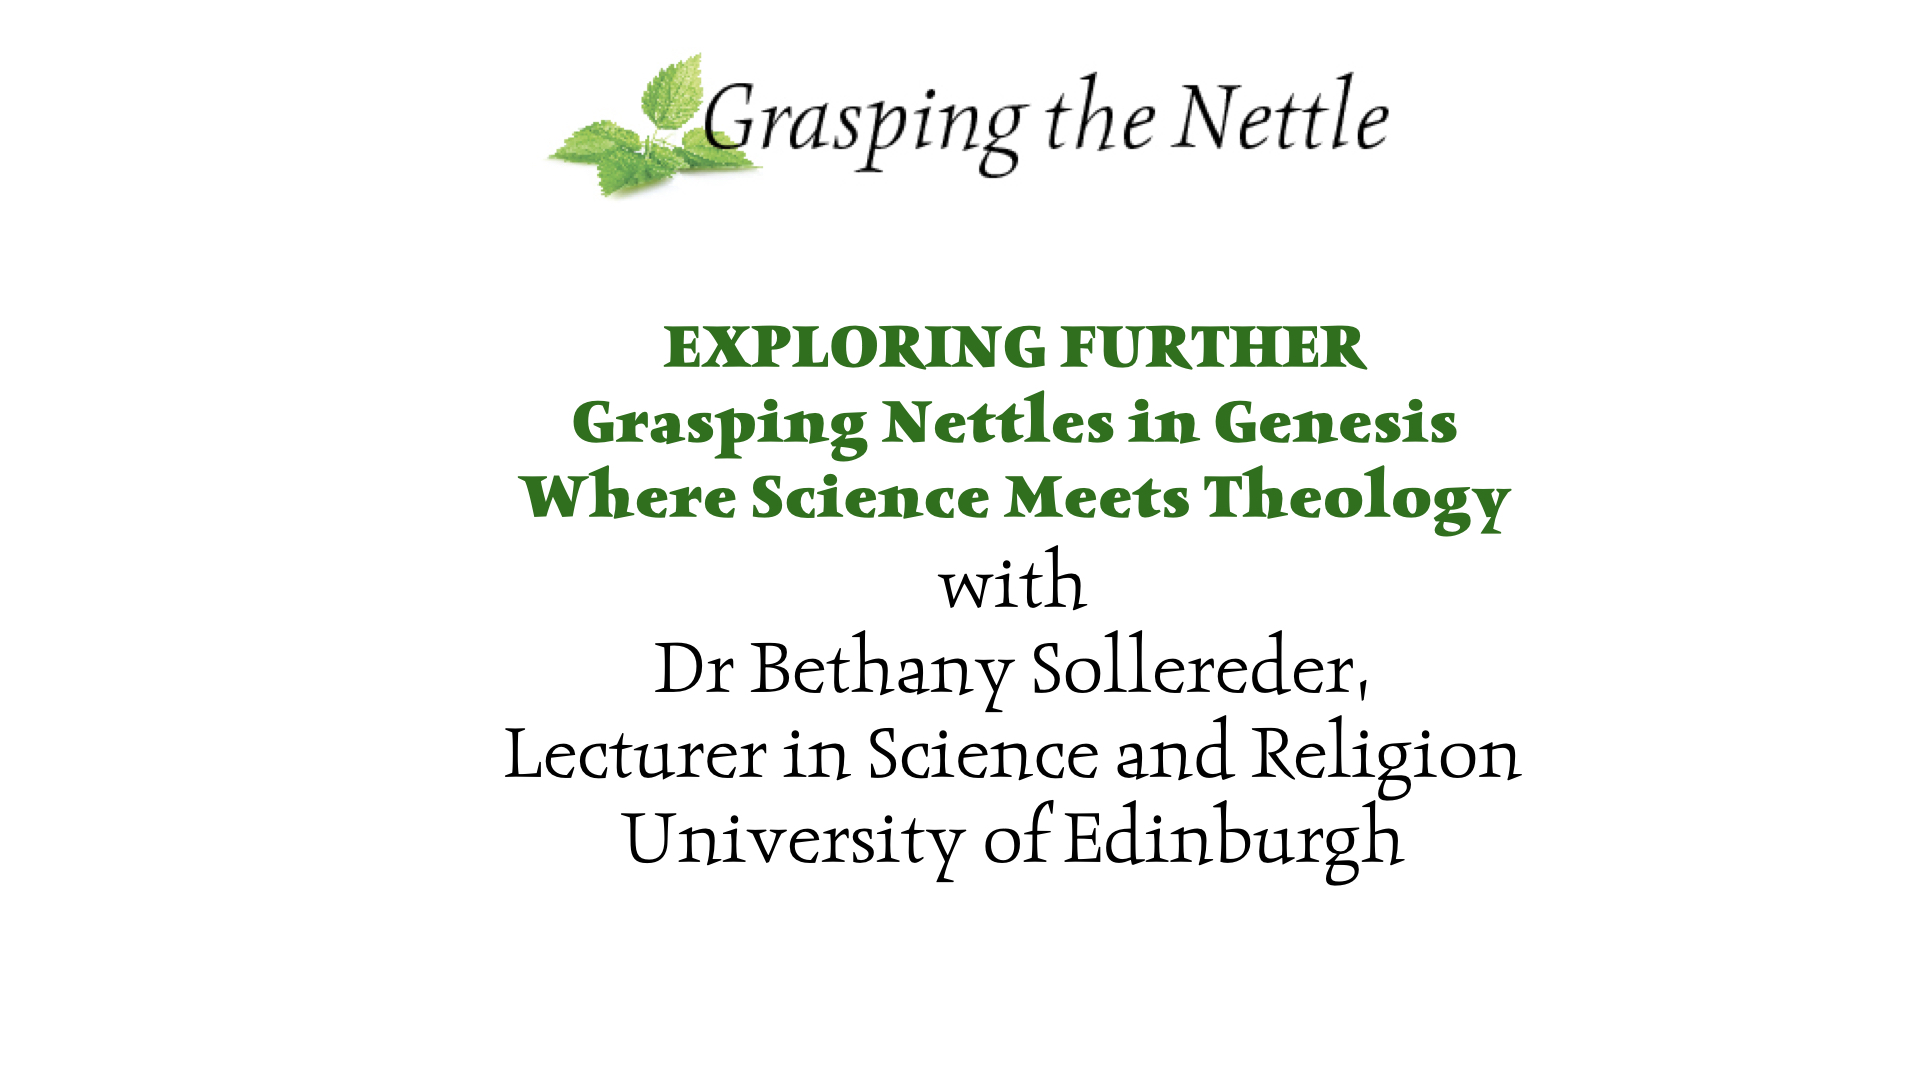 Exploring Further: Grasping Nettles in Genesis